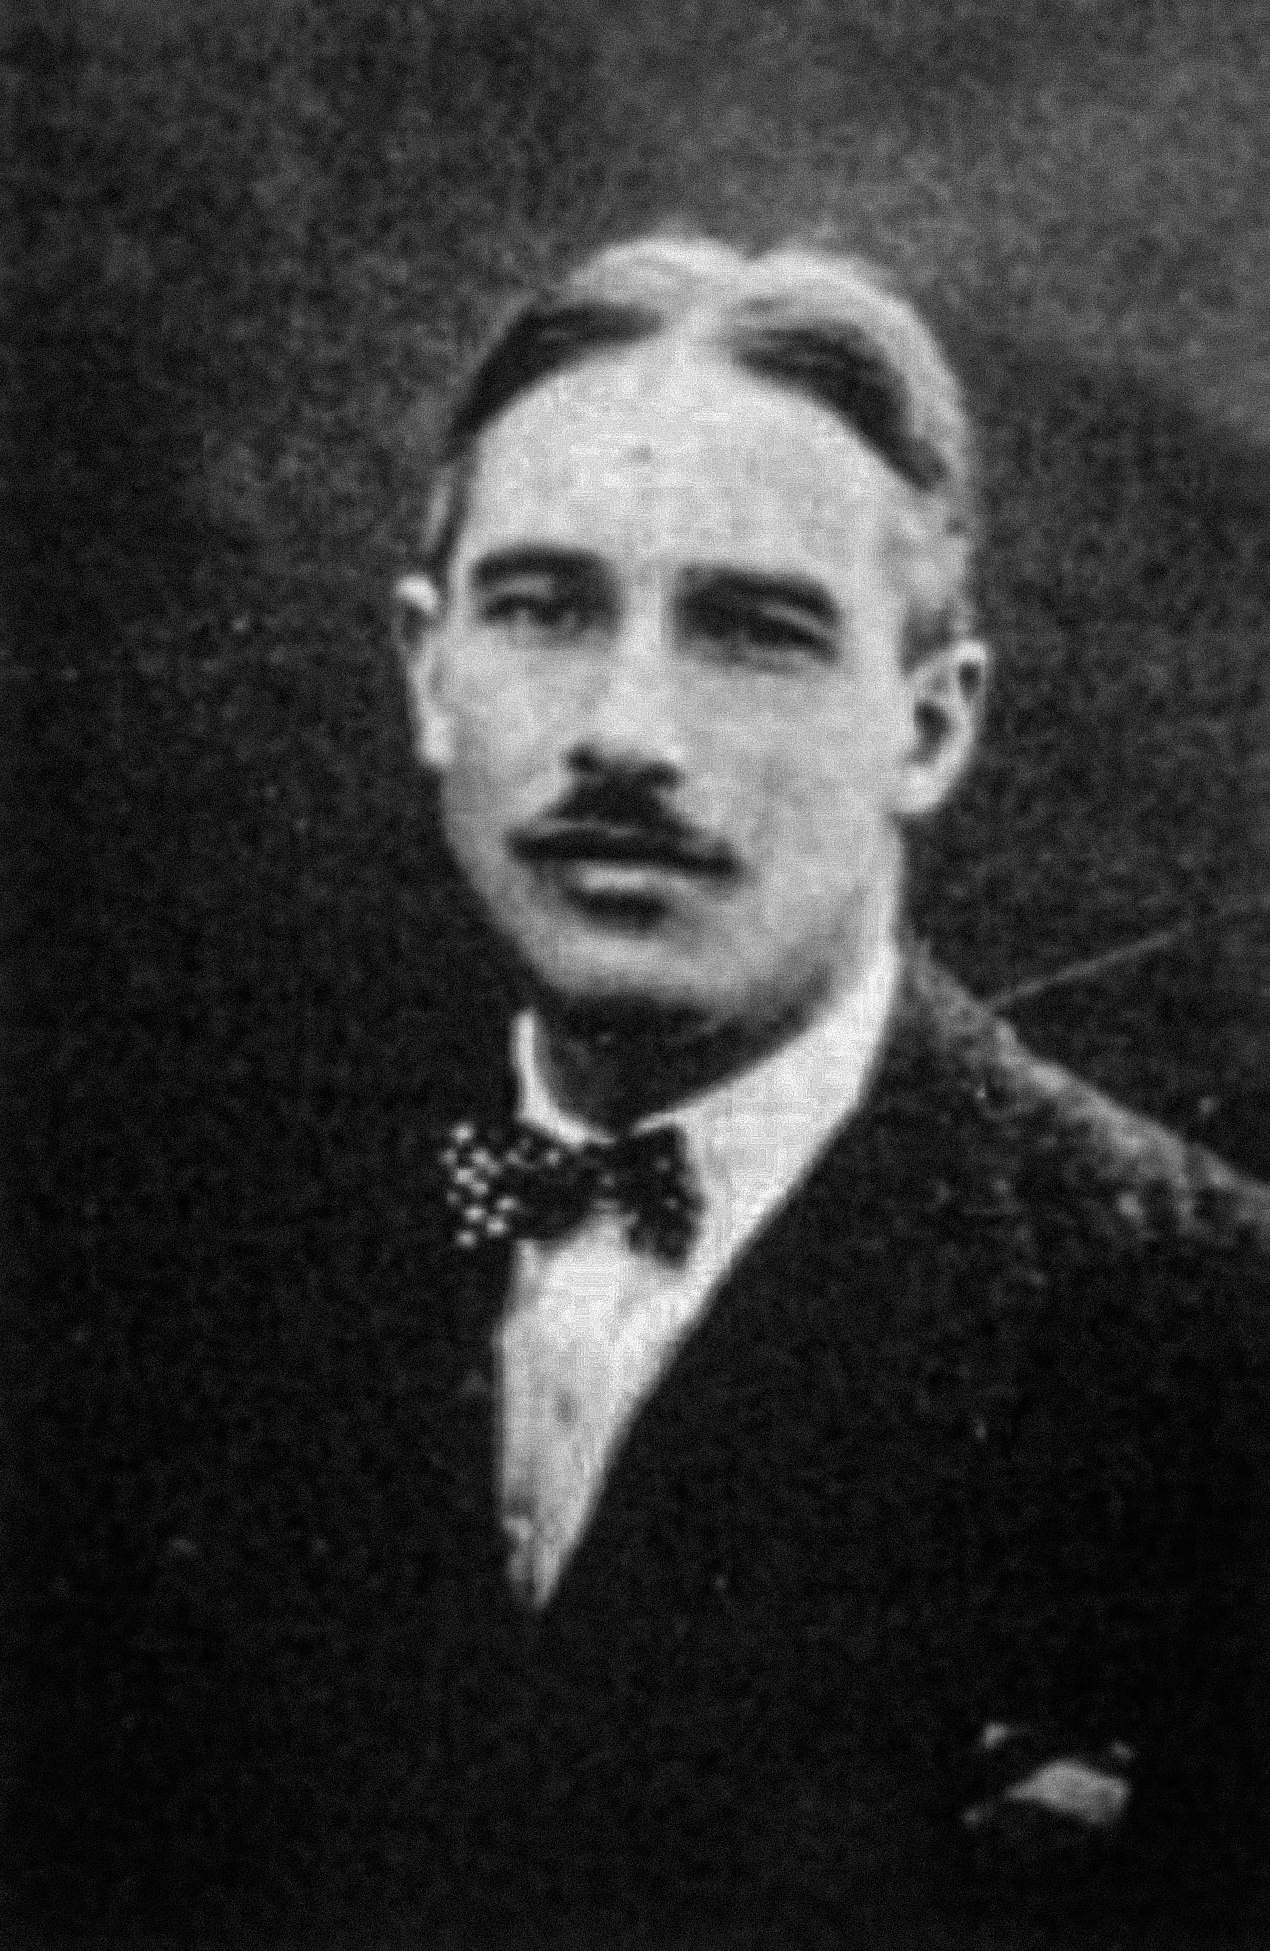 Francois de Loys (1892-1935) 可能在 1917 年委内瑞拉远征之前